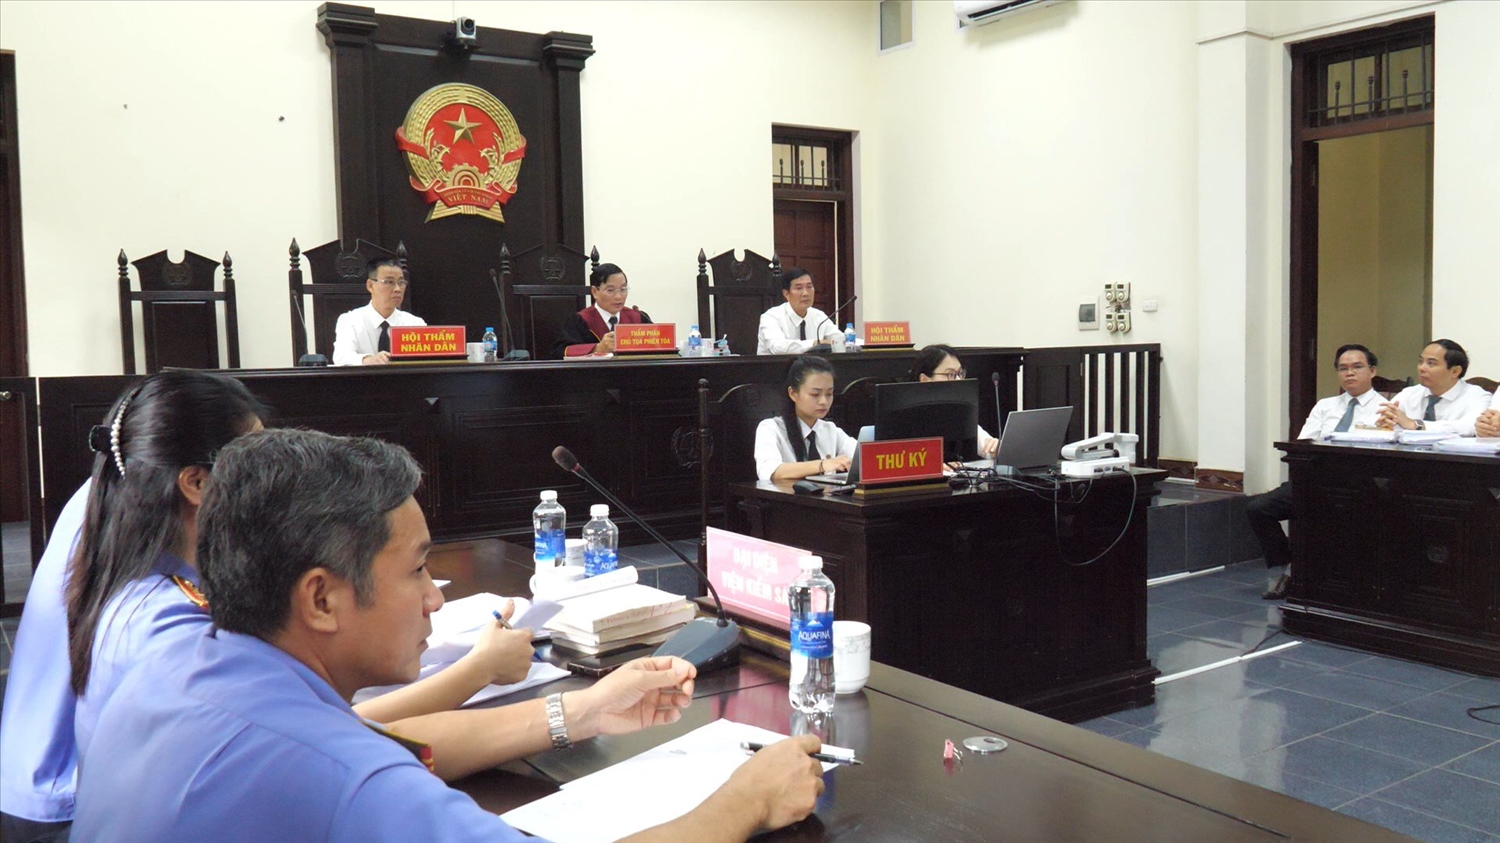 Thẩm phán Bùi Văn Khanh, Phó Chánh án Tòa án Nhân dân tỉnh Lào Cai làm Chủ tọa phiên tòa